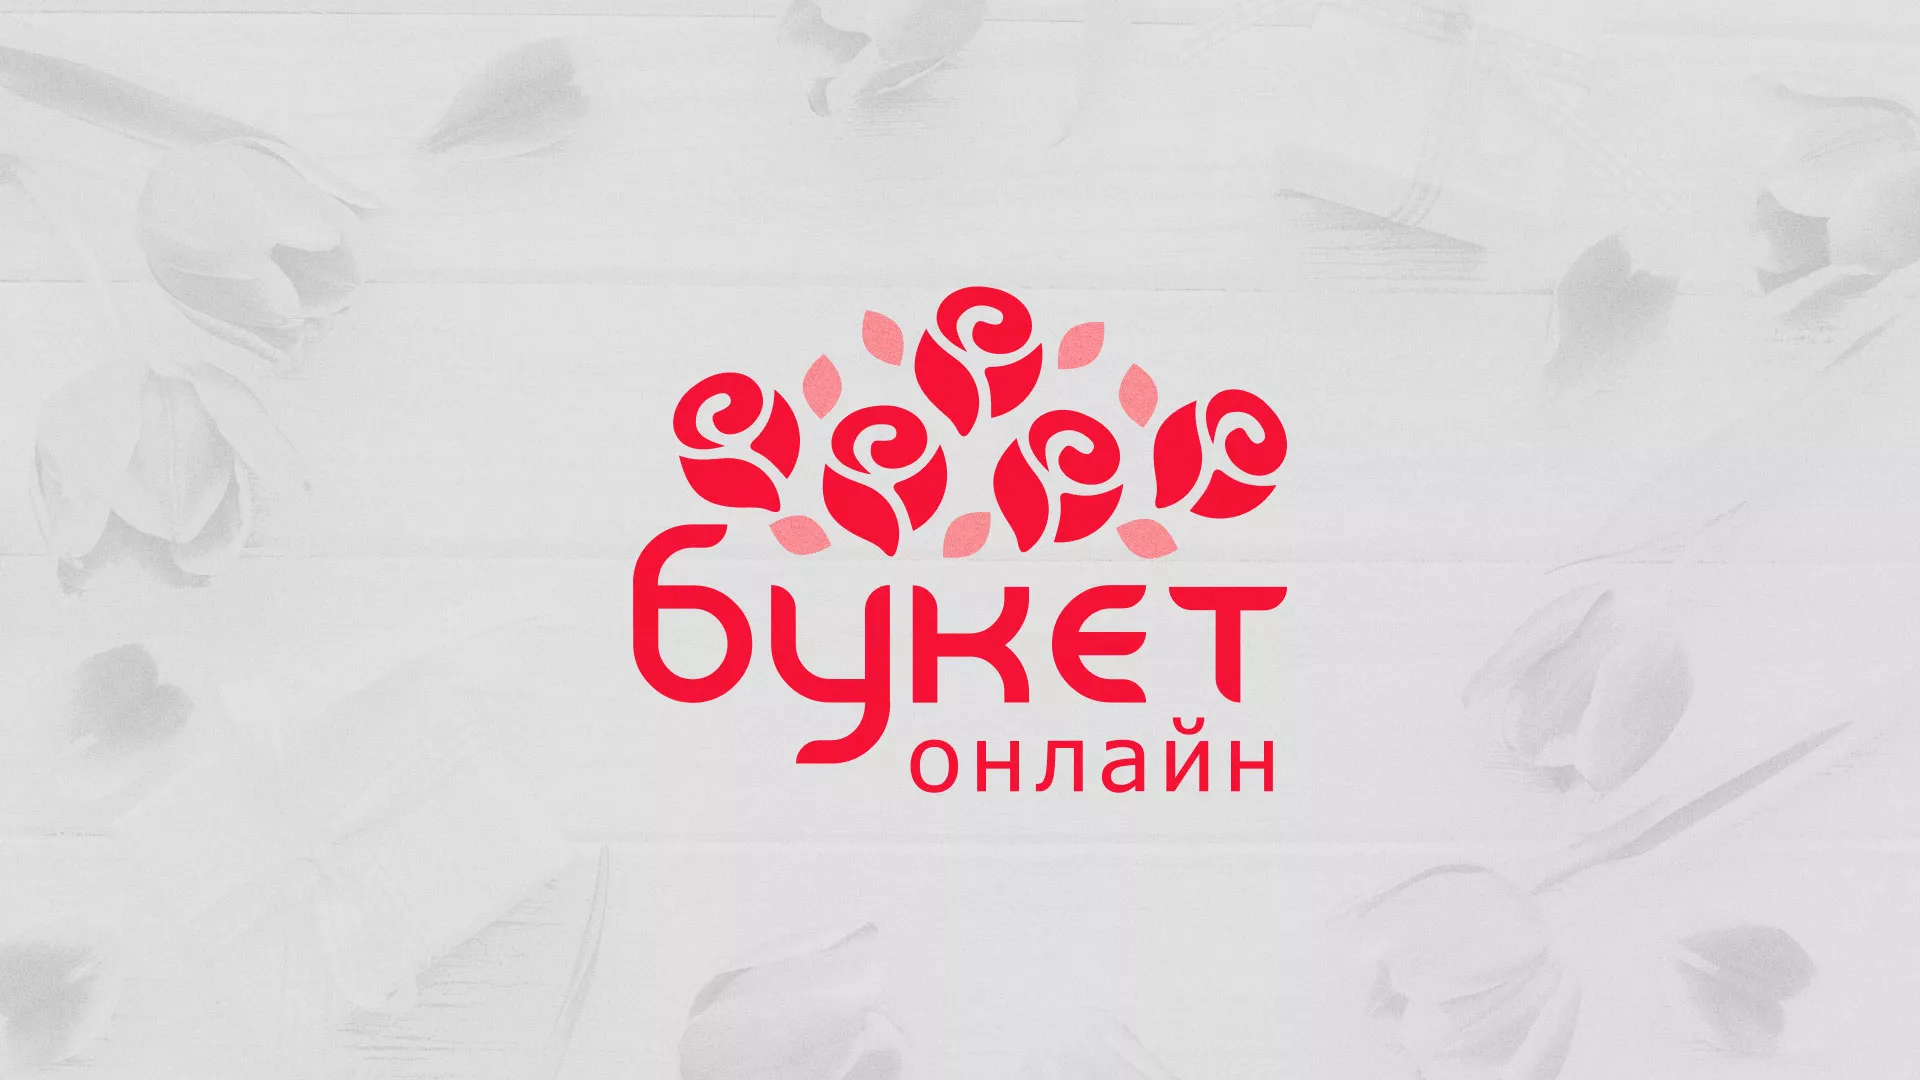 Создание интернет-магазина «Букет-онлайн» по цветам в Новопавловске